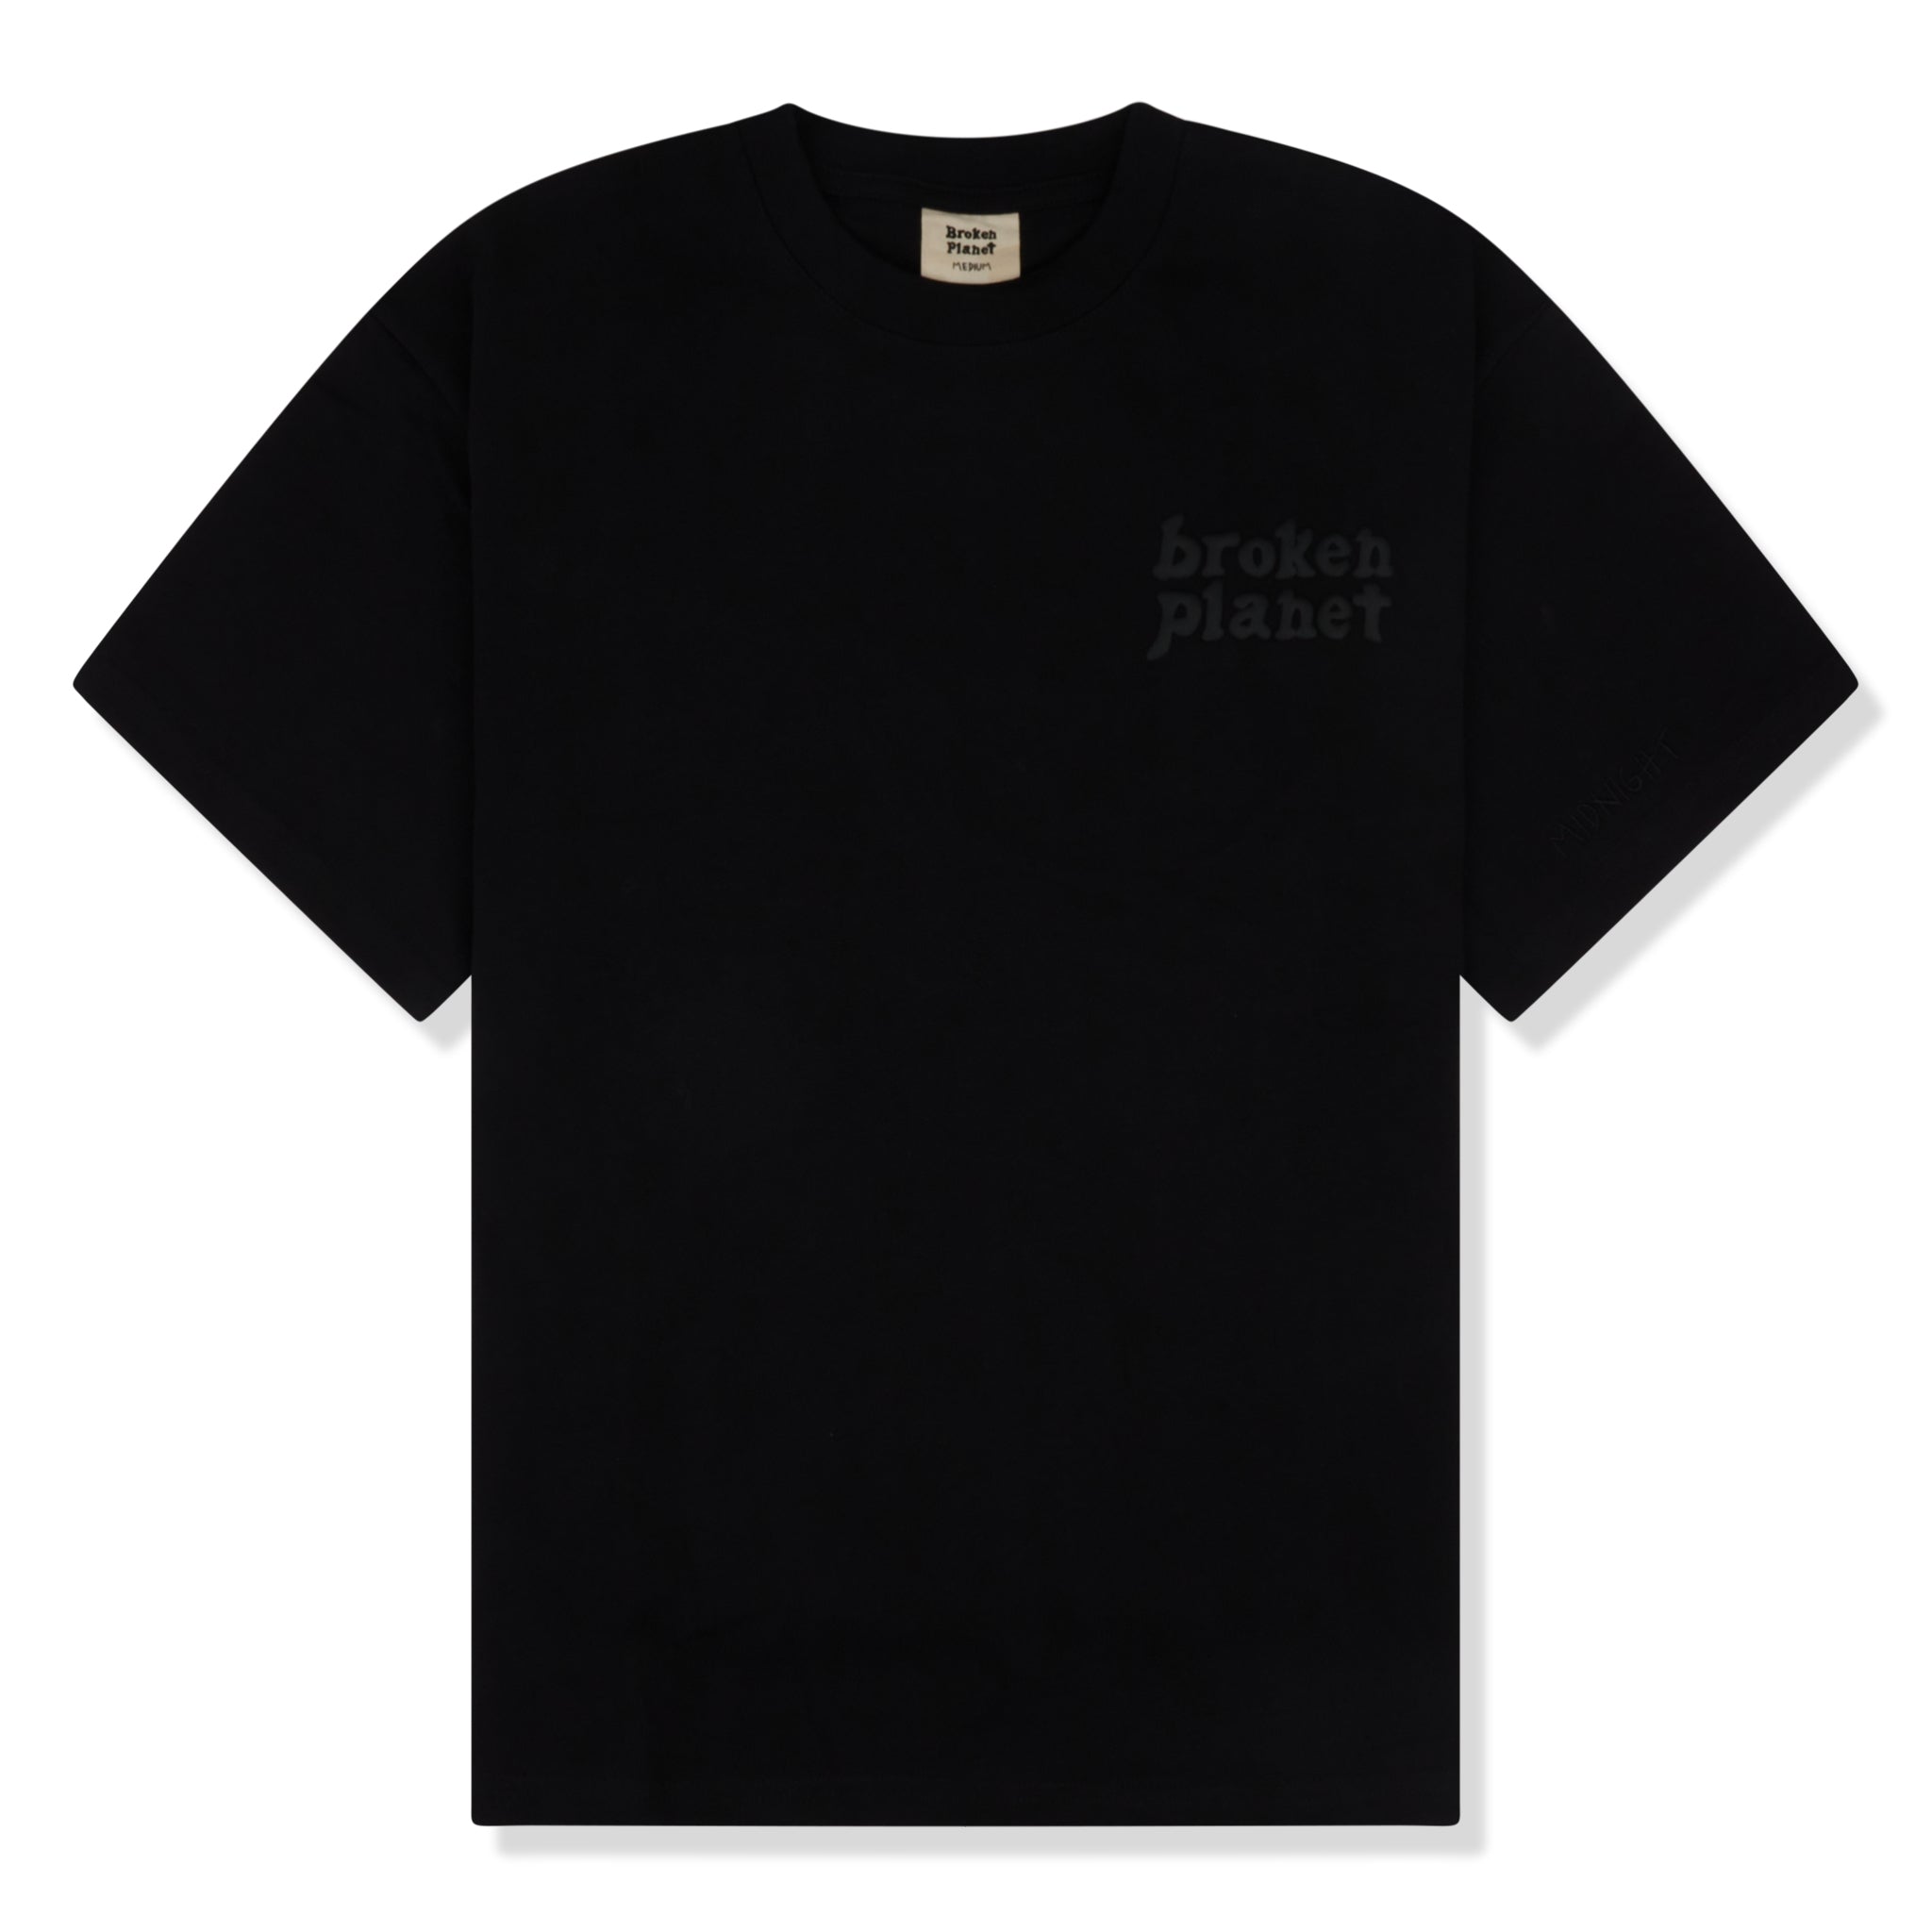 Image of Broken Planet Market Basics Midnight Black T Shirt